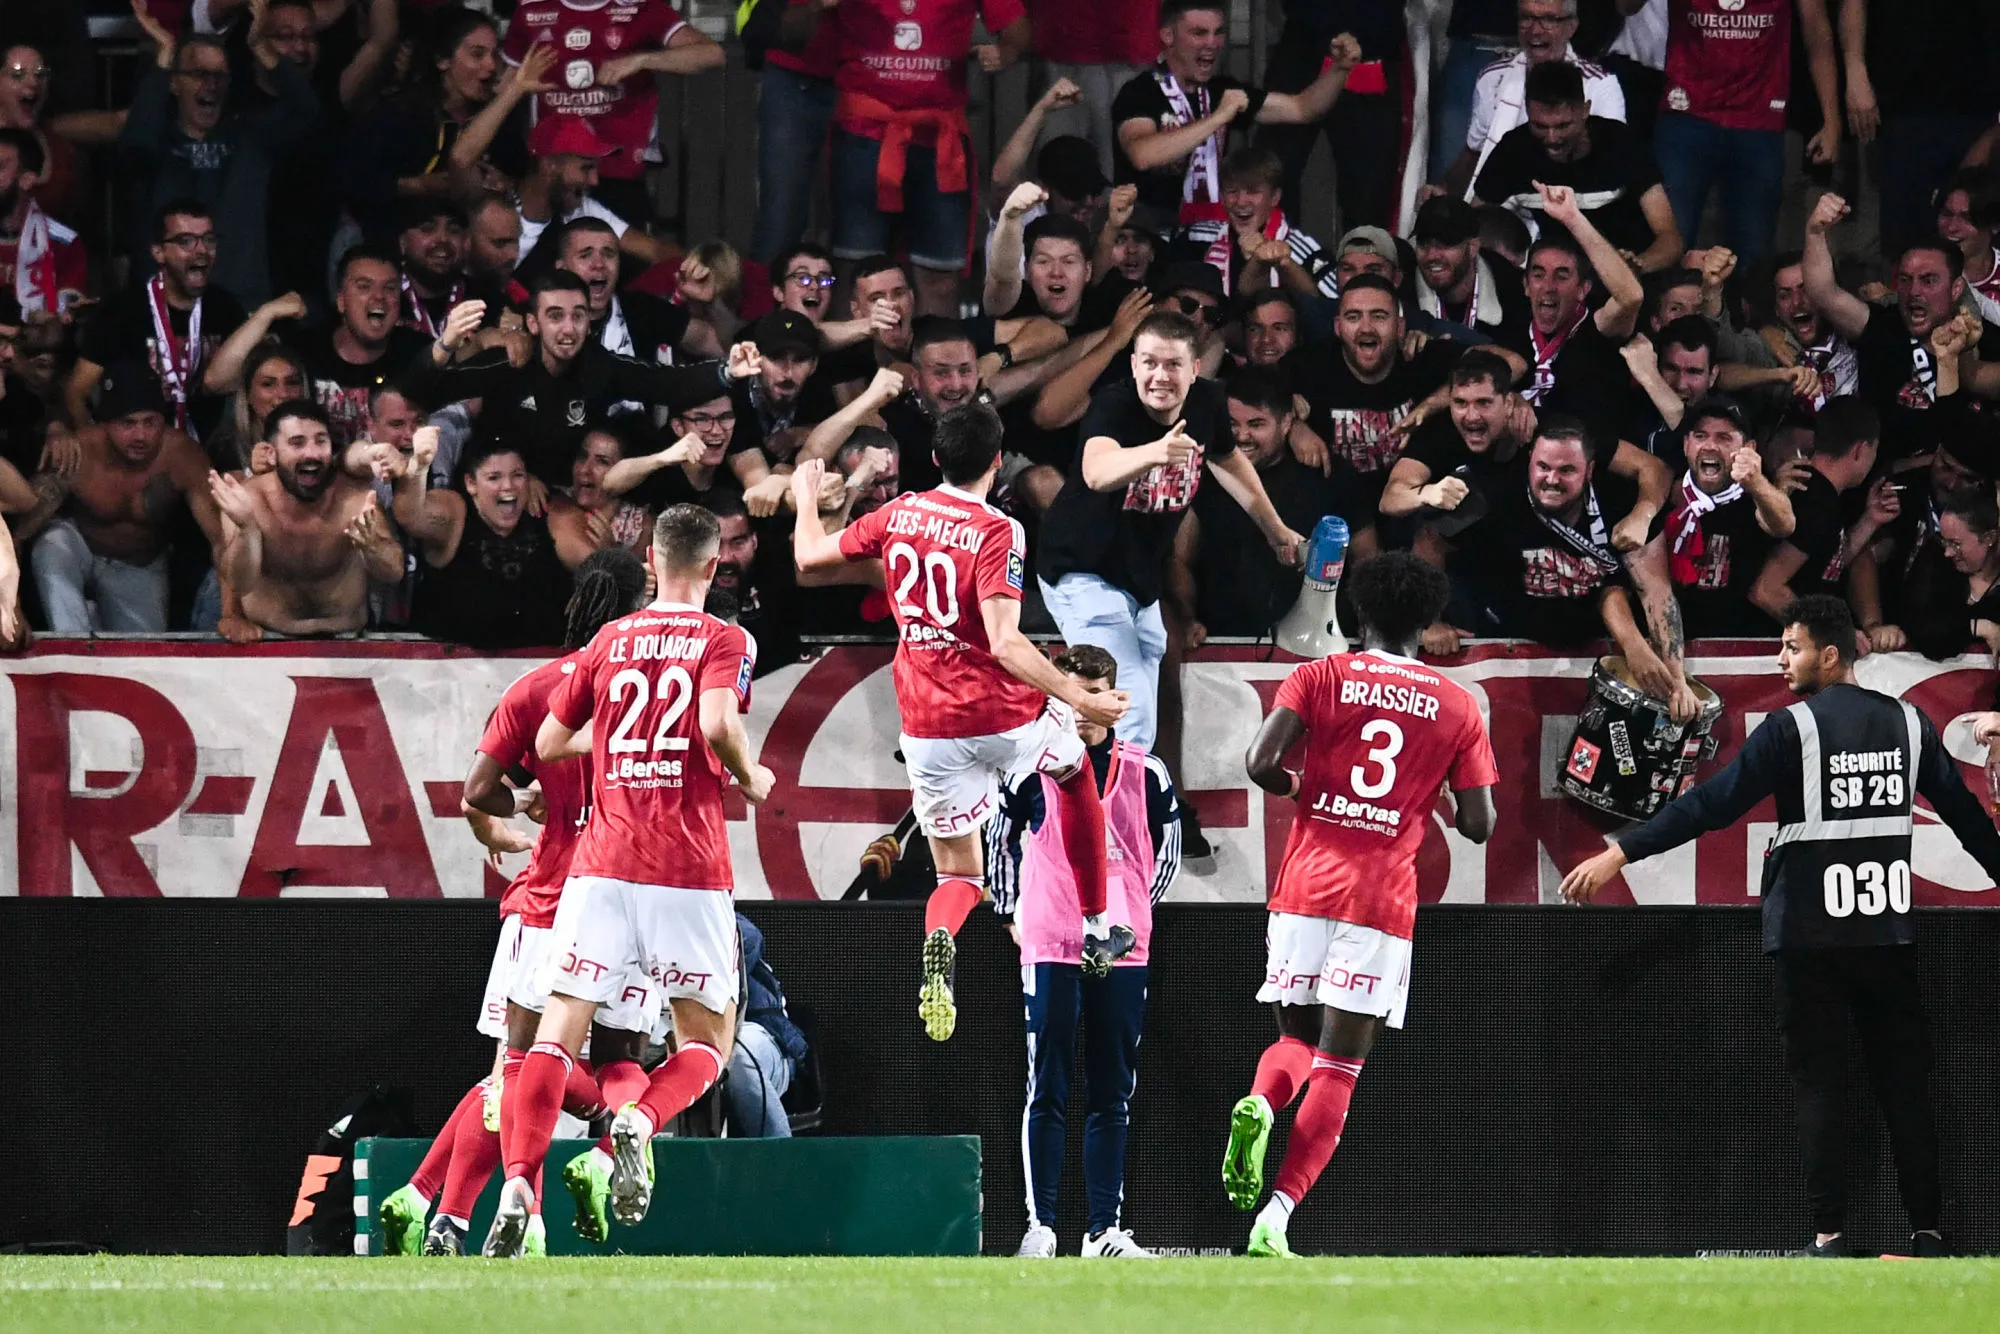 Pronostic Brest Ajaccio : Analyse, cotes et prono du match de Ligue 1